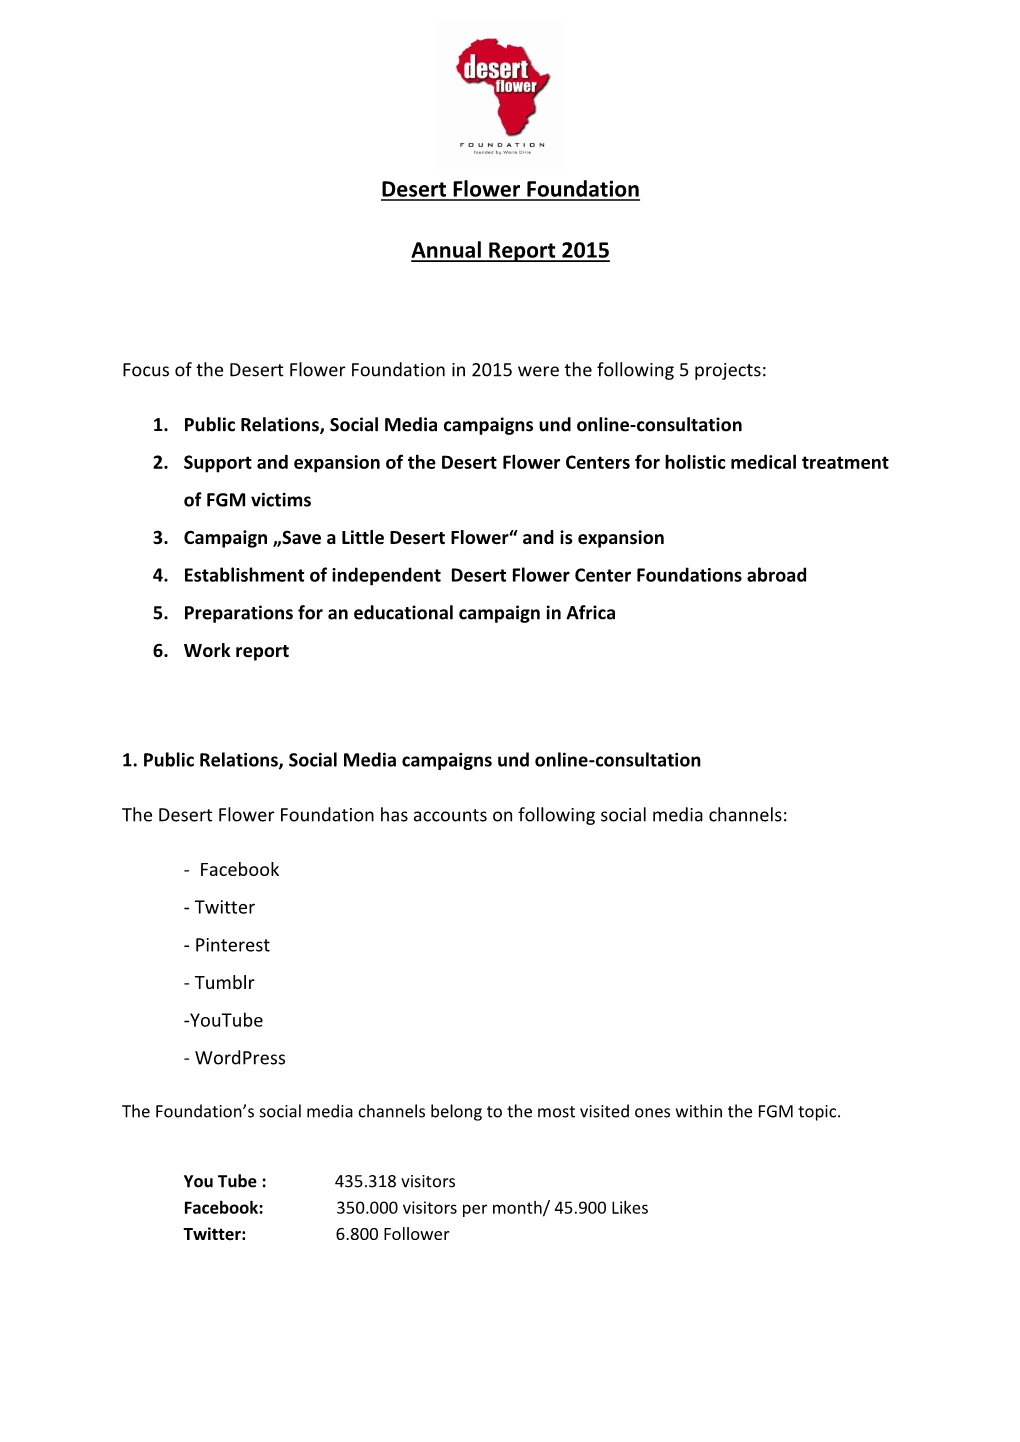 Desert Flower Foundation Annual Report 2015